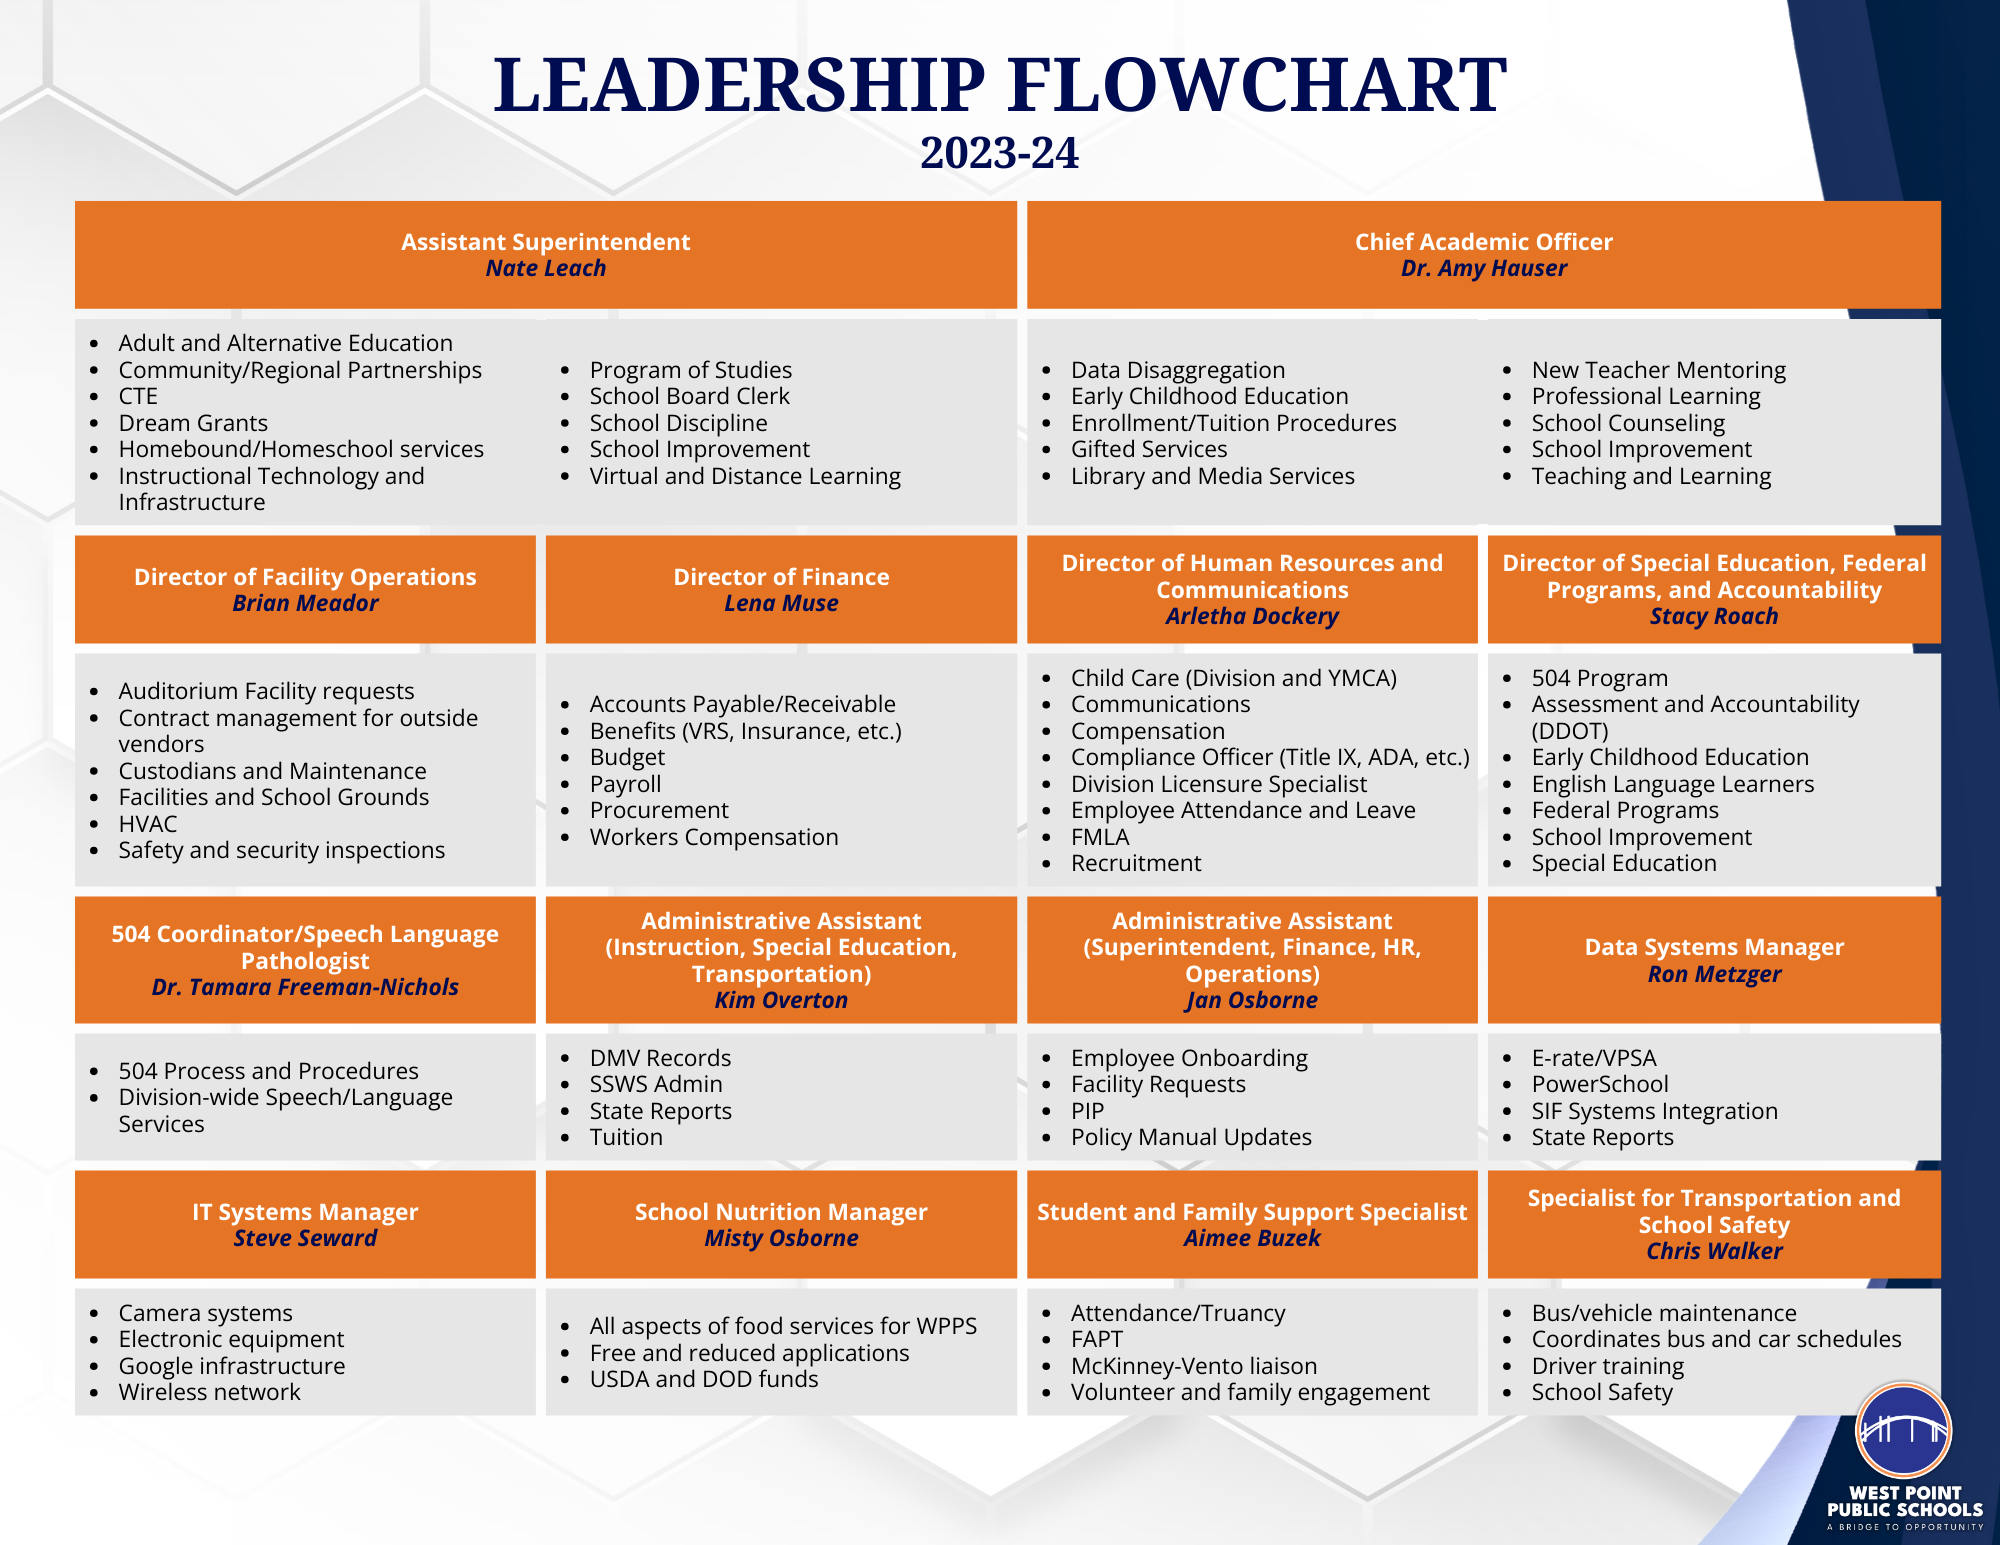 Leadership Flowchart Duties